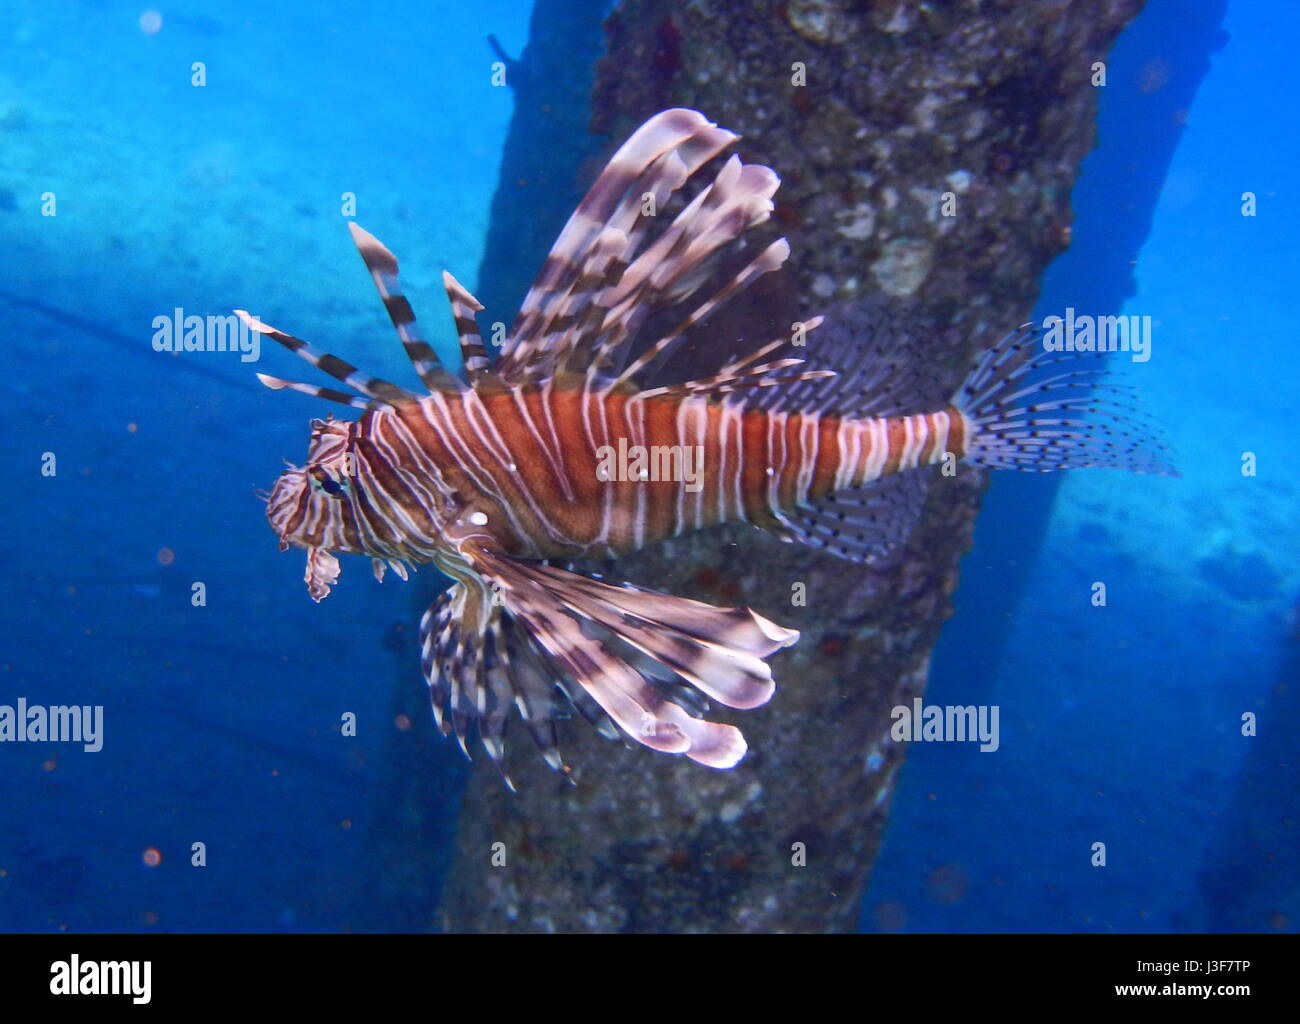 Les poissons-papillons les plus colorés dans les meilleurs récifs de corail jamais vu. Poisson-papillon Coomon, Pterois miles, Aqaba, Mer rouge, Jordanie, Moyen-Orient, Asie Banque D'Images